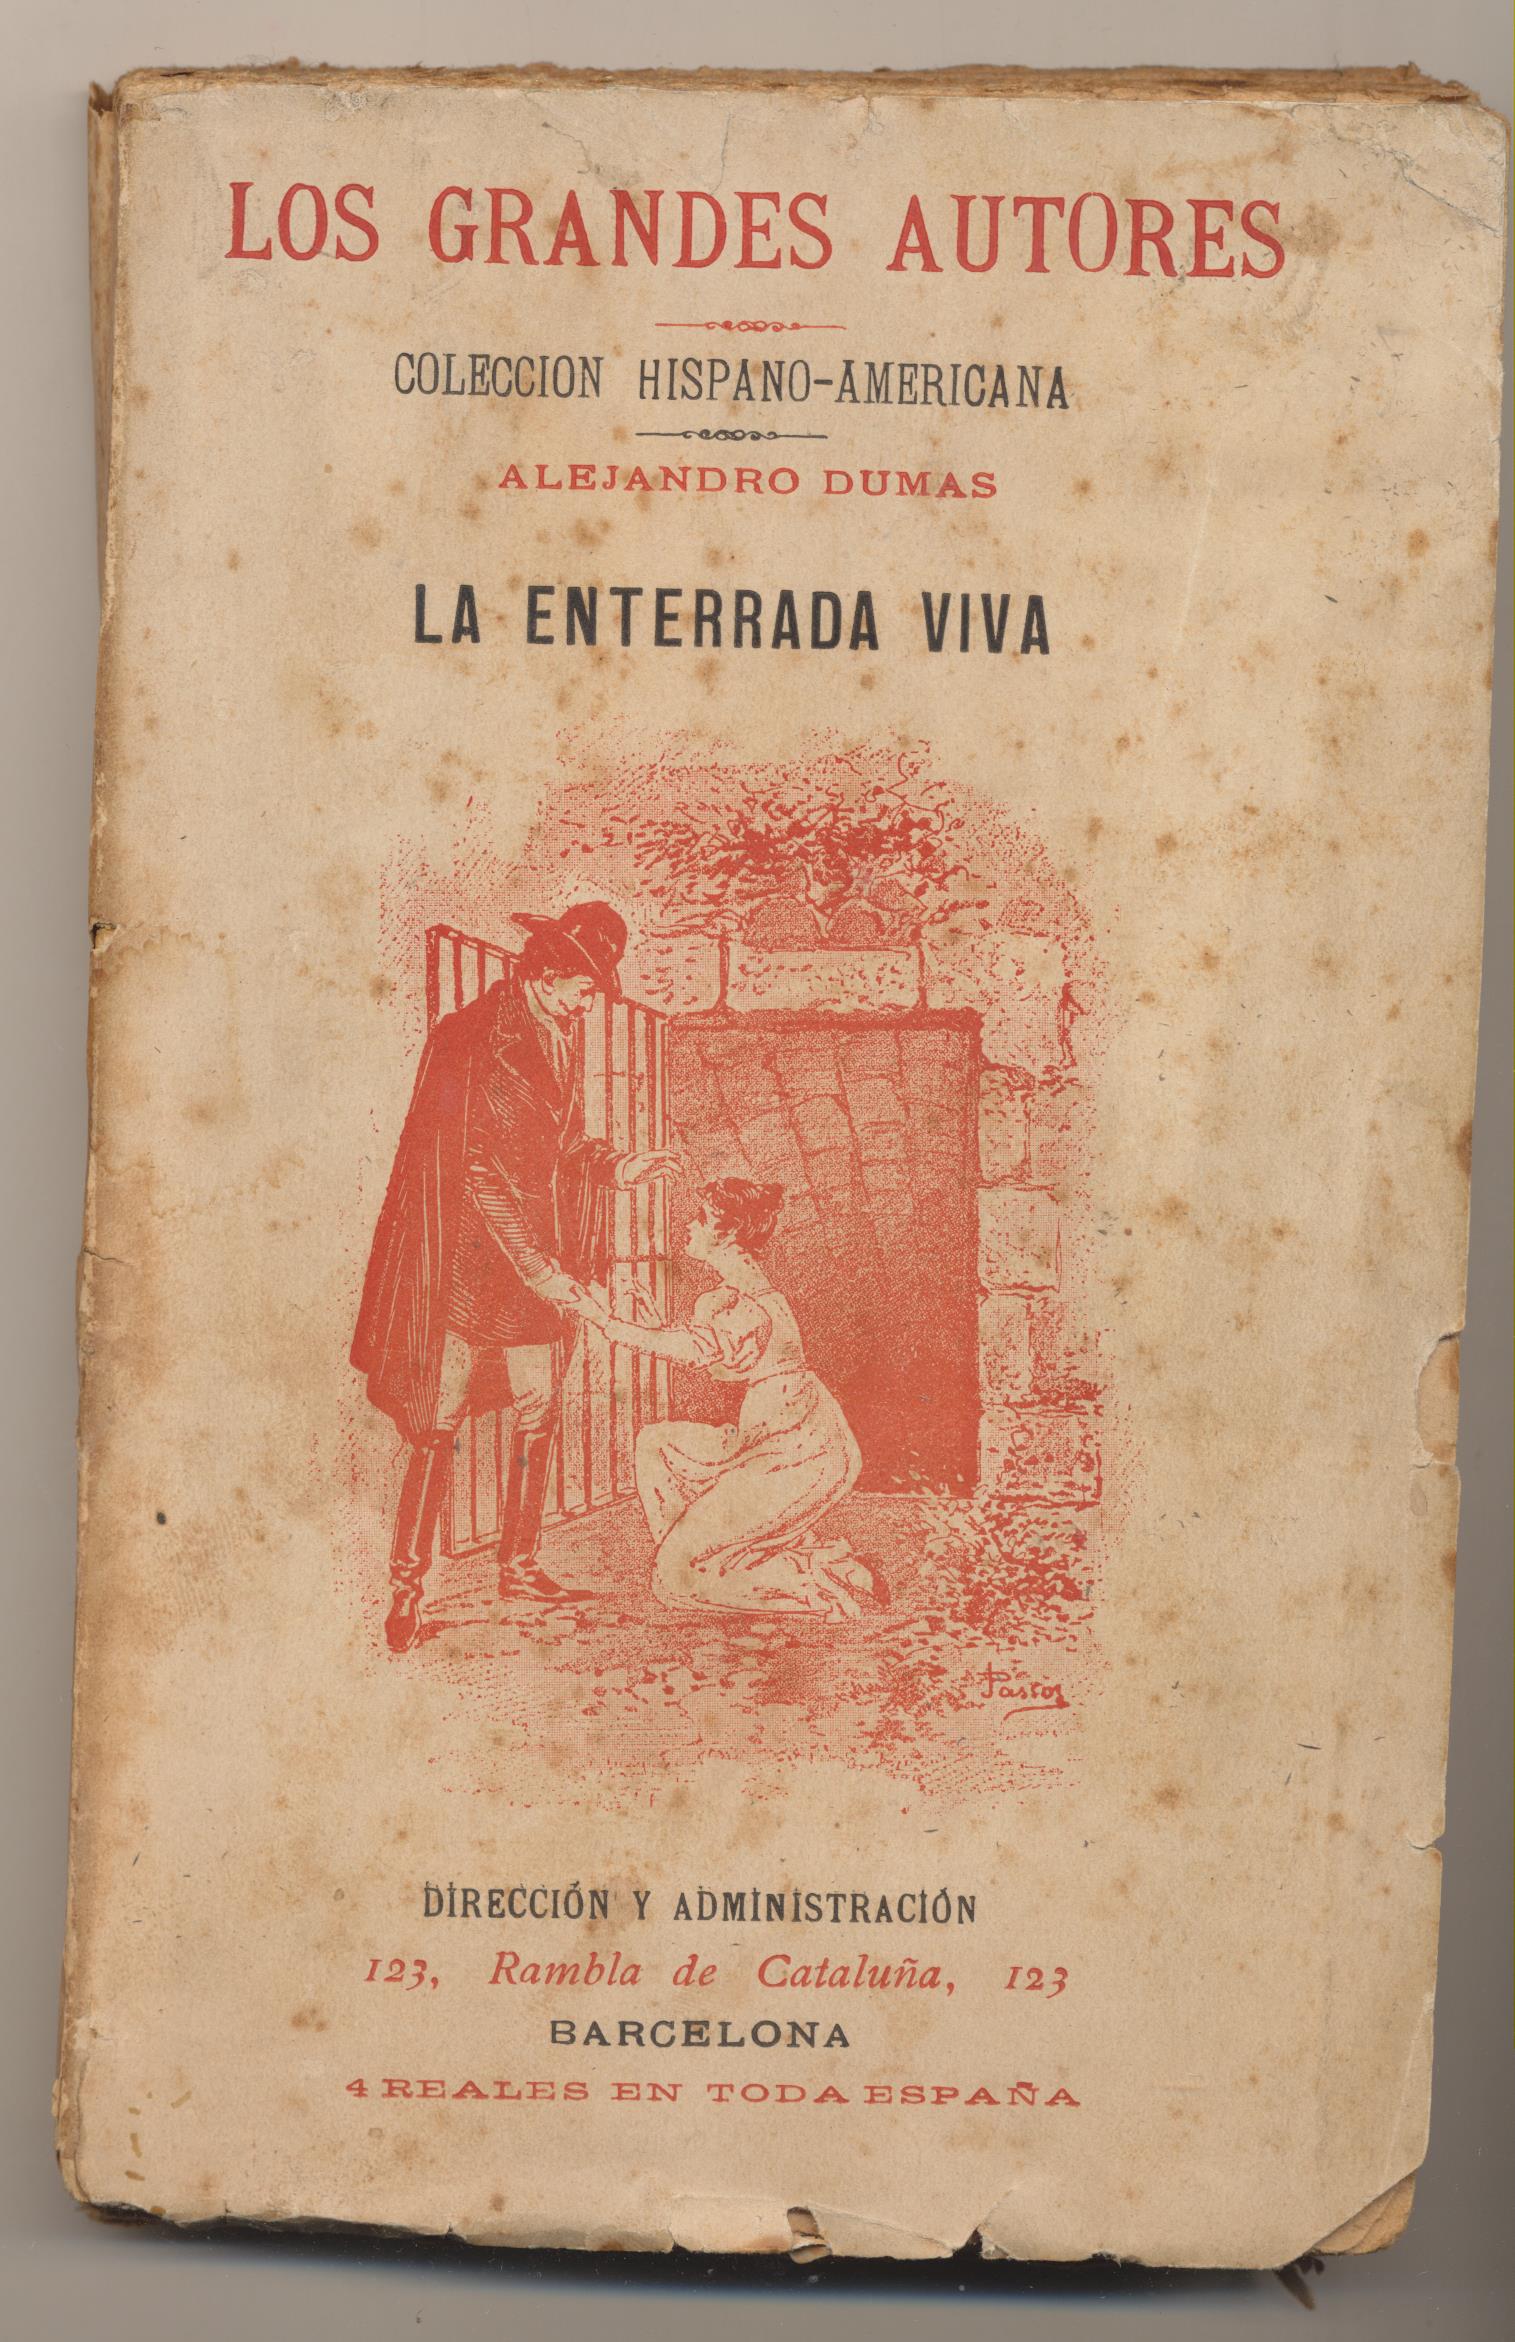 Alejandro Dumas. La Enterrada viva. Colección Hispano Americana 19??